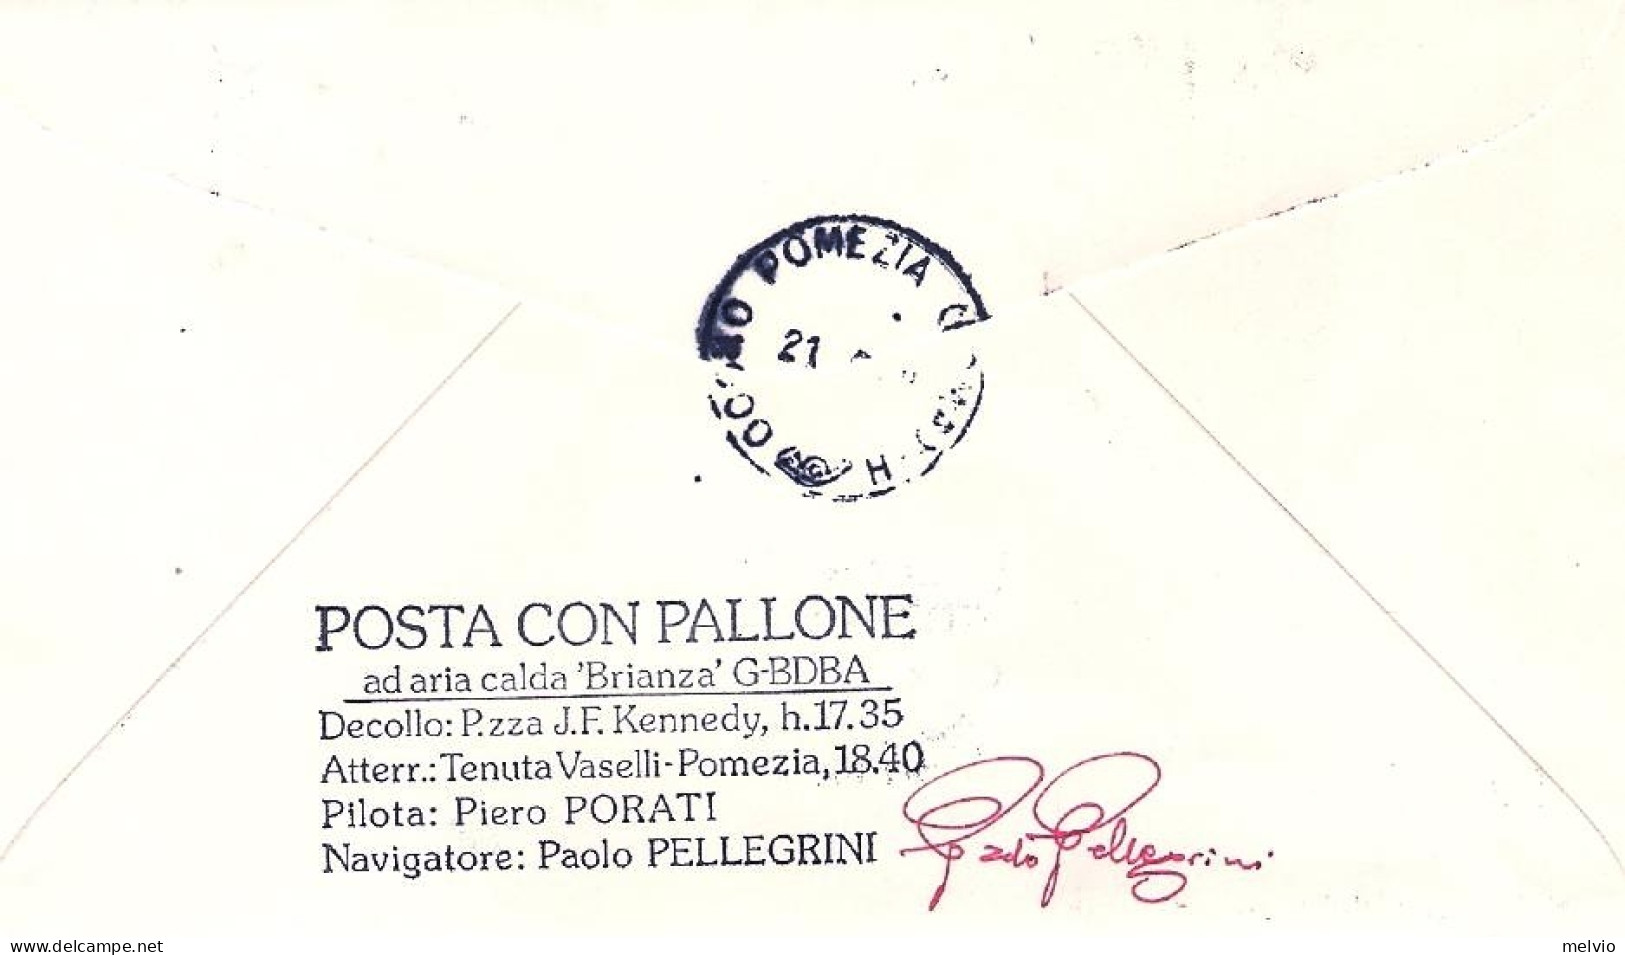 1978-Russia Volo Con Mongolfiera Per Eurphila Roma-Pomezia Al Verso Bollo "posta - Storia Postale